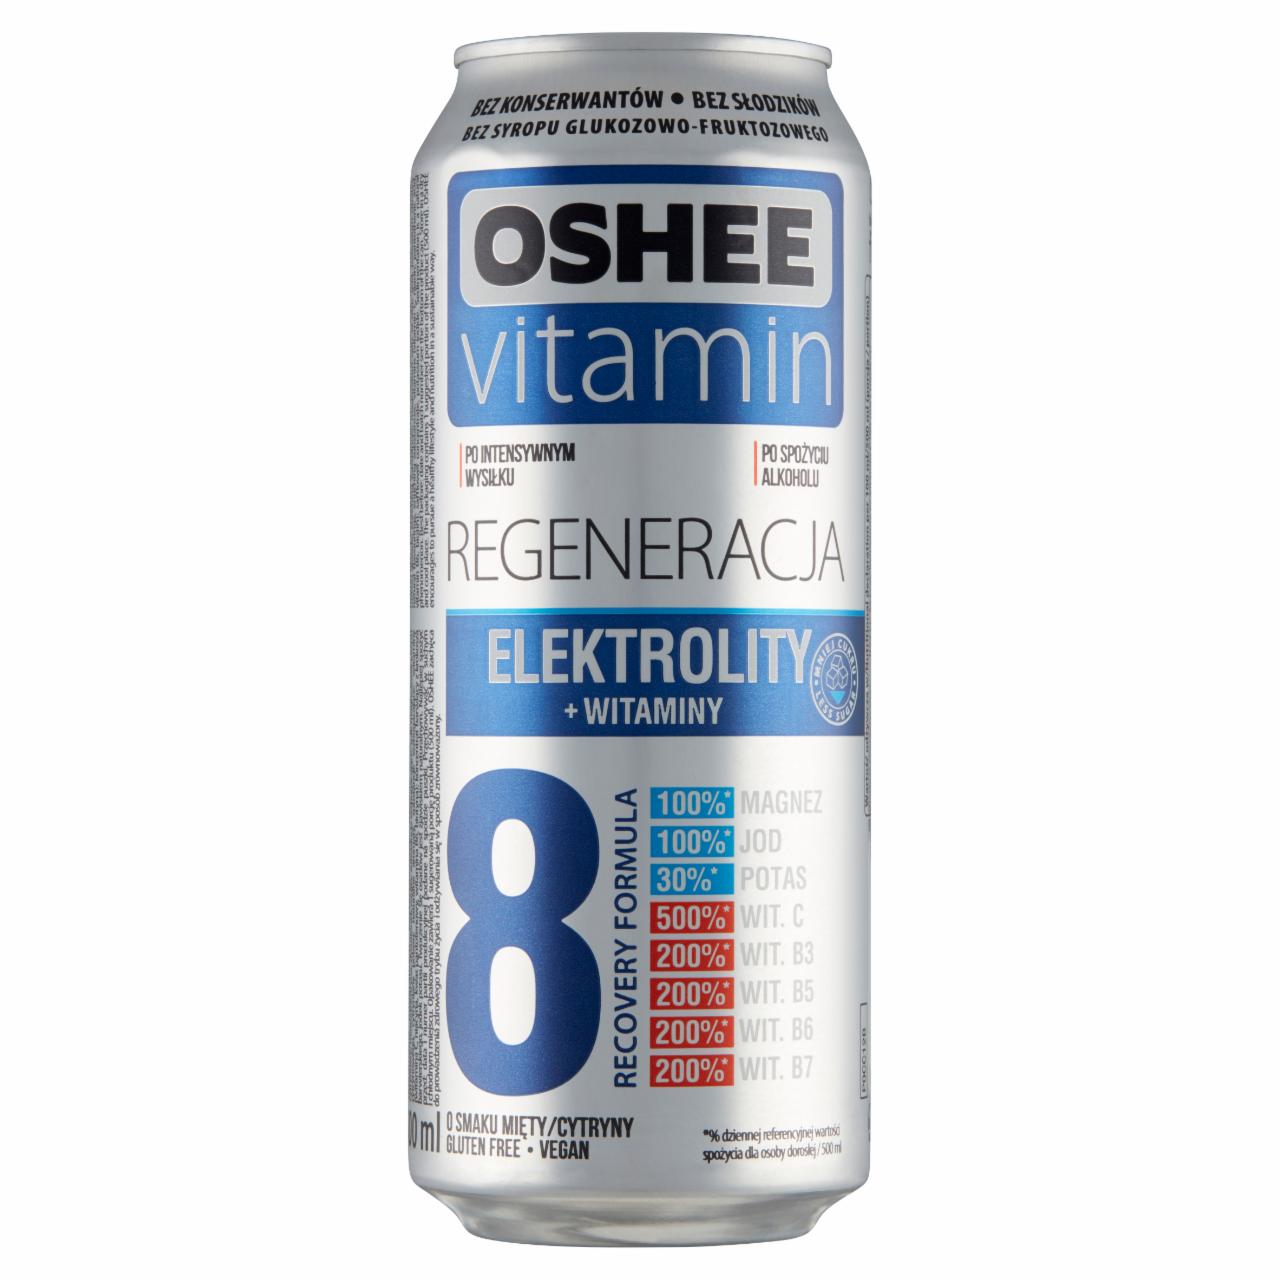 Zdjęcia - Oshee Vitamin Regeneracja Napój gazowany o smaku mięty-cytryny 500 ml